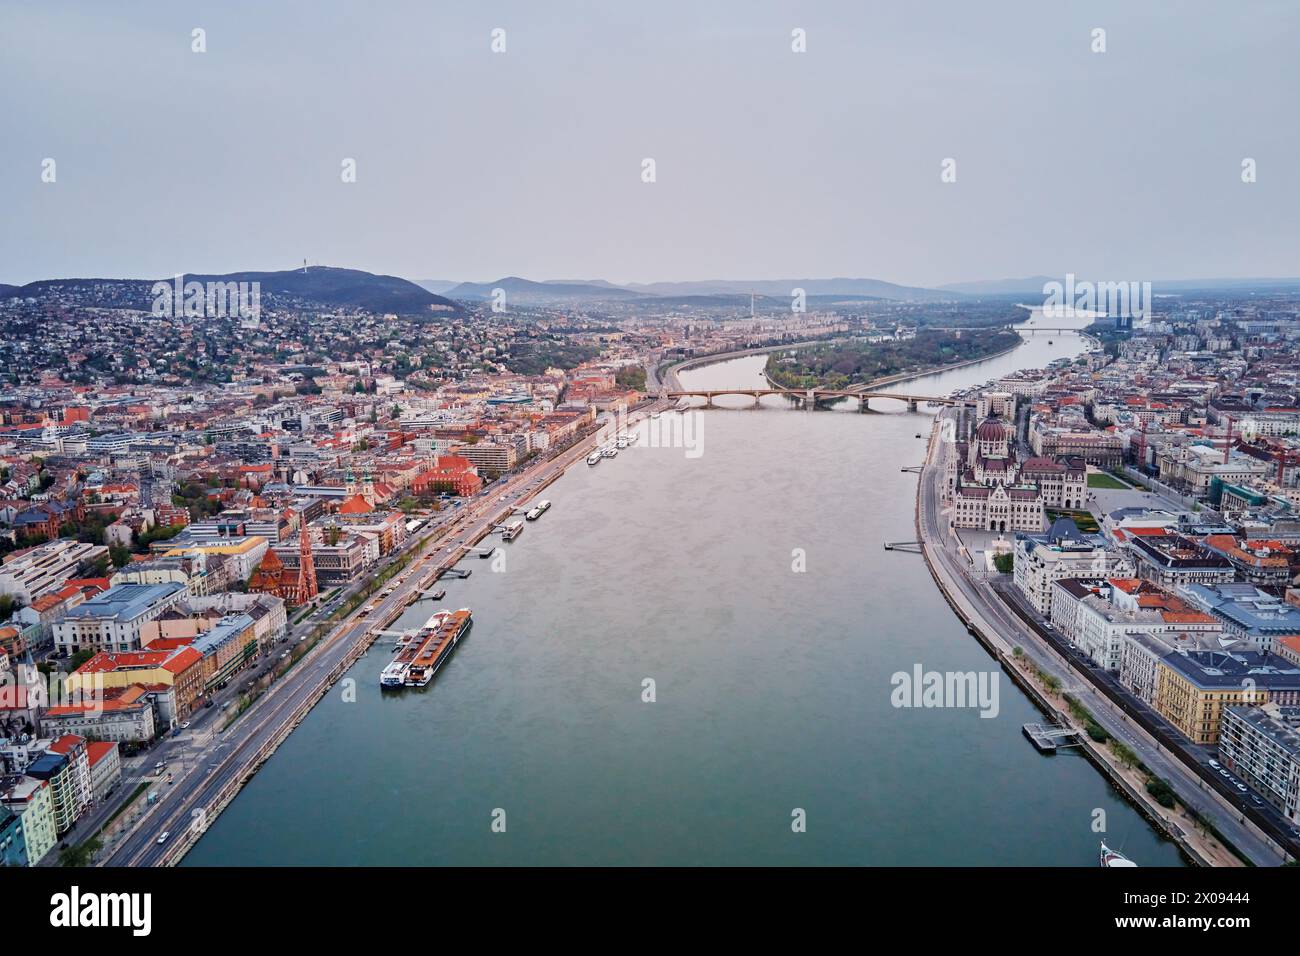 Vue panoramique sur Budapest le long du Danube. Vue aérienne de la capitale de la Hongrie avec des bâtiments historiques et des monuments célèbres Banque D'Images